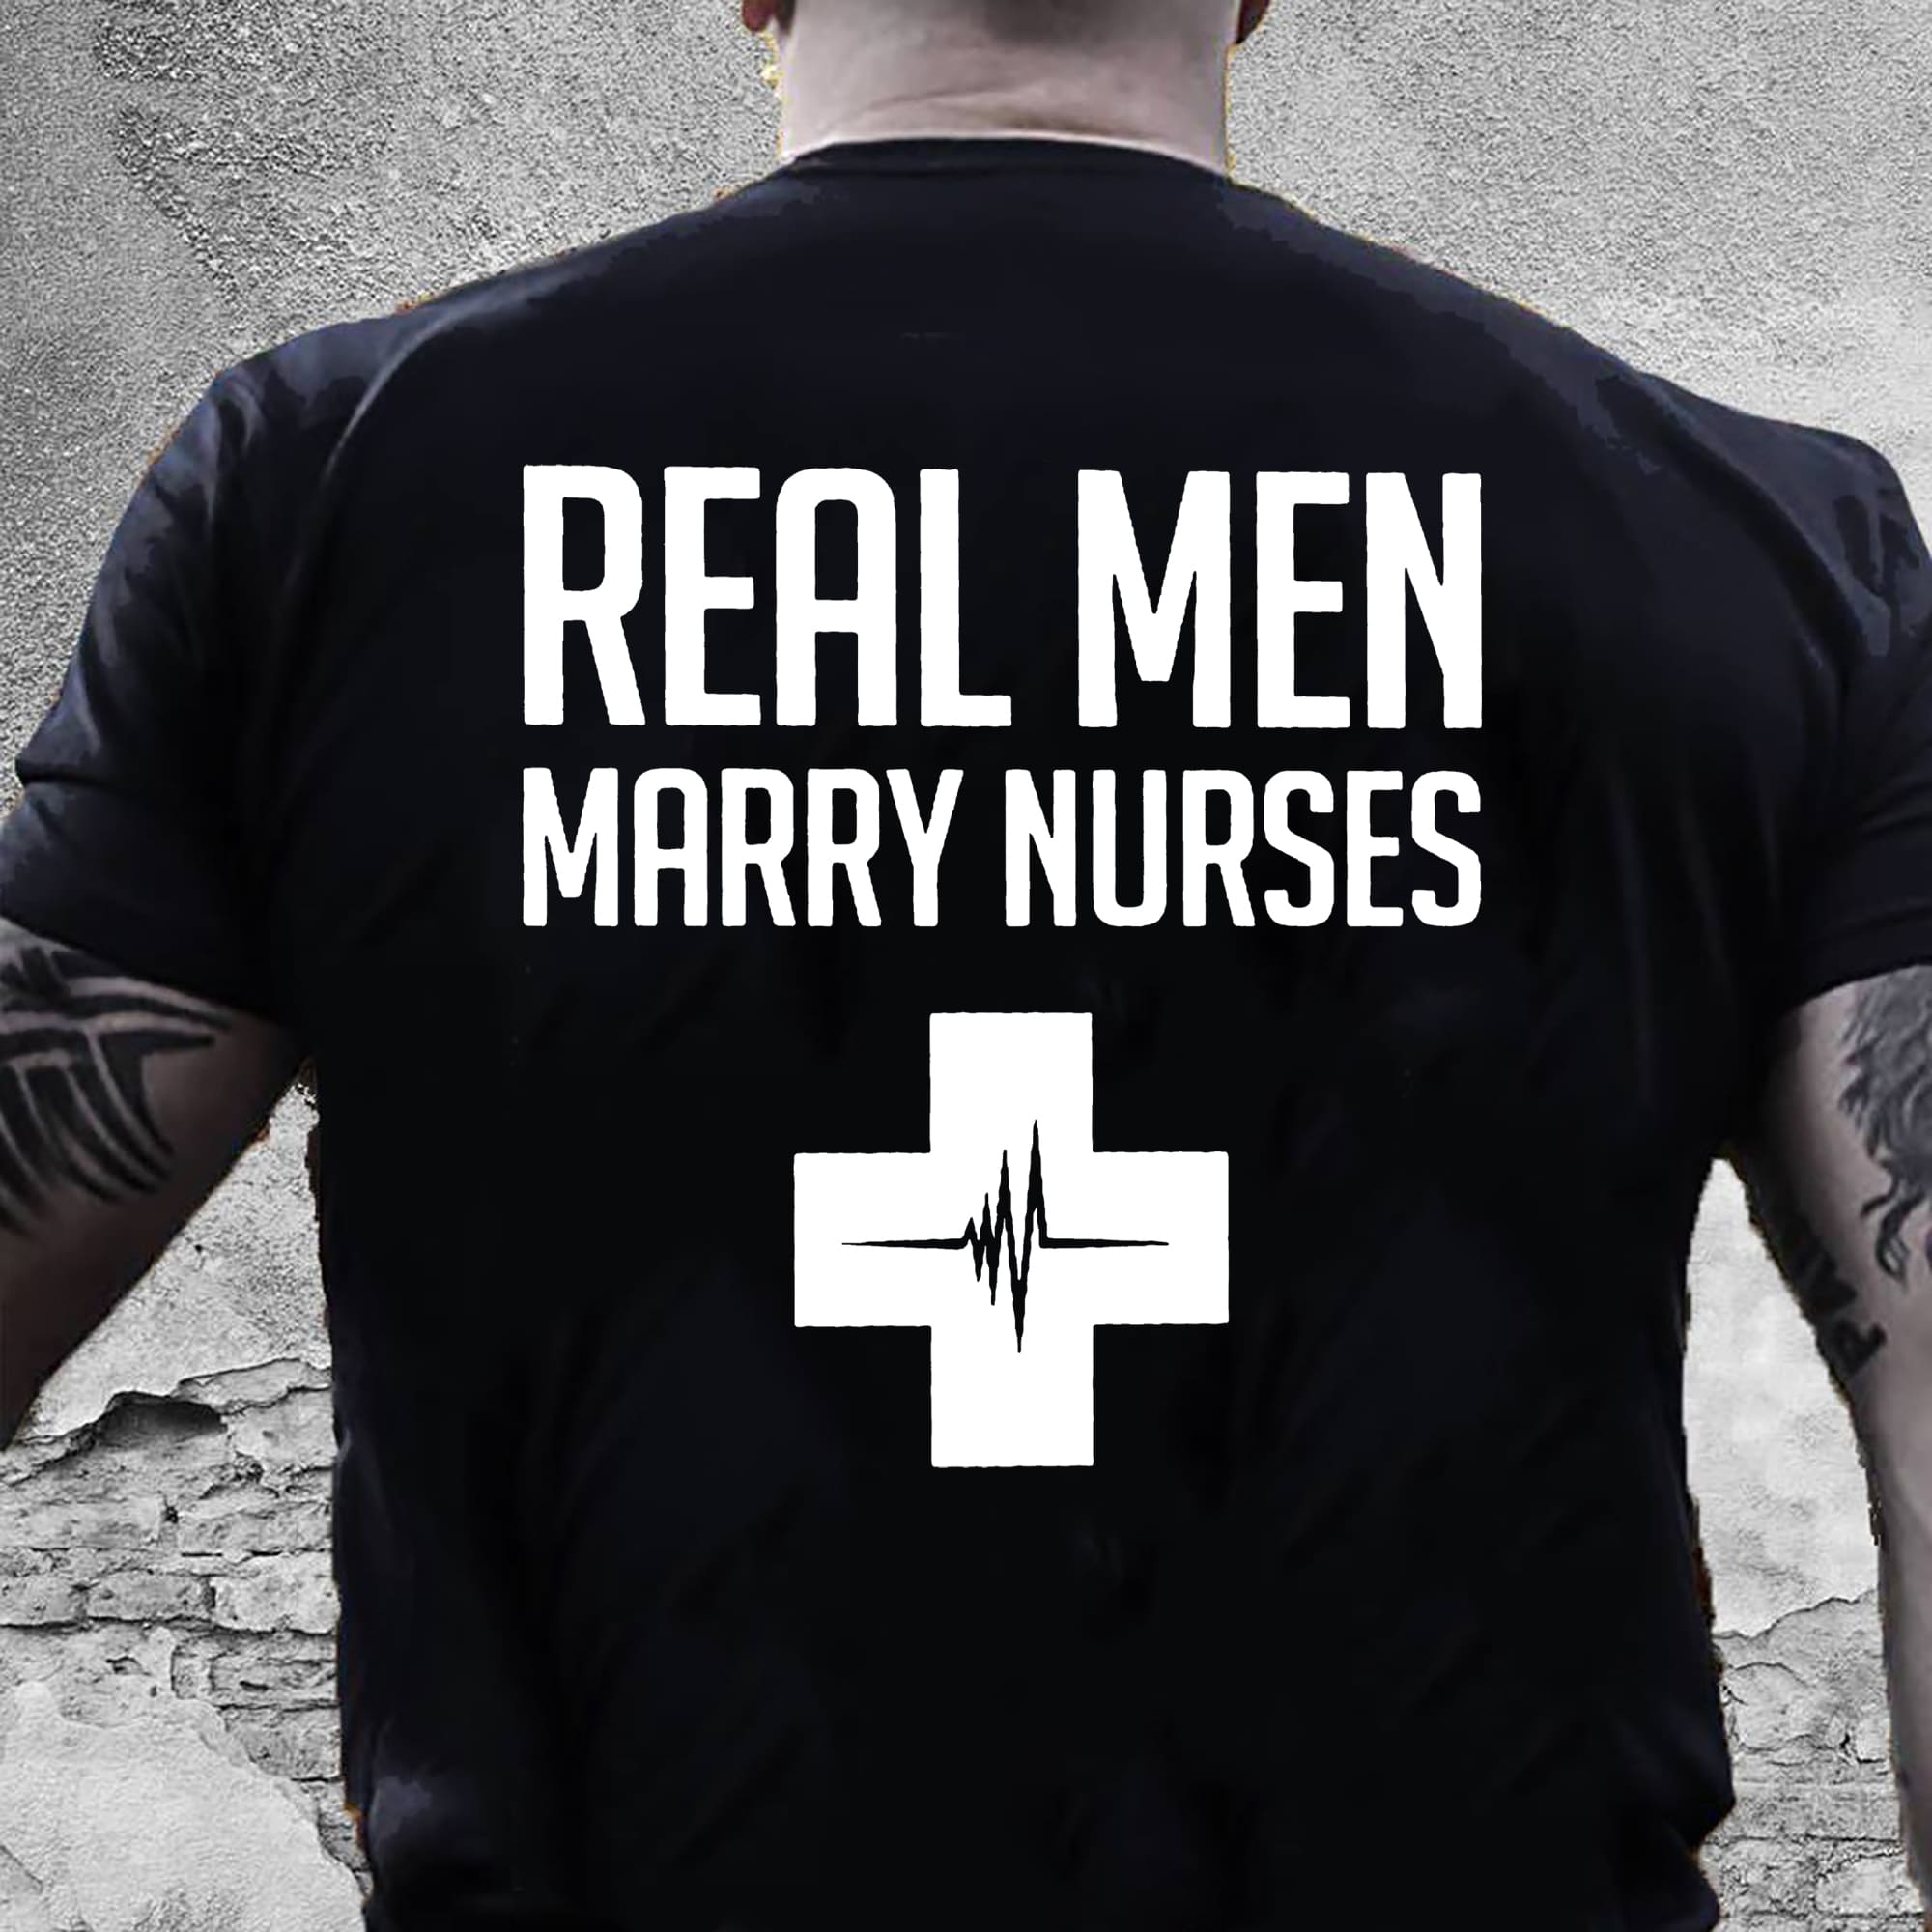 Real men marry nurses - T-shirt for nurse's husband, nursing the job